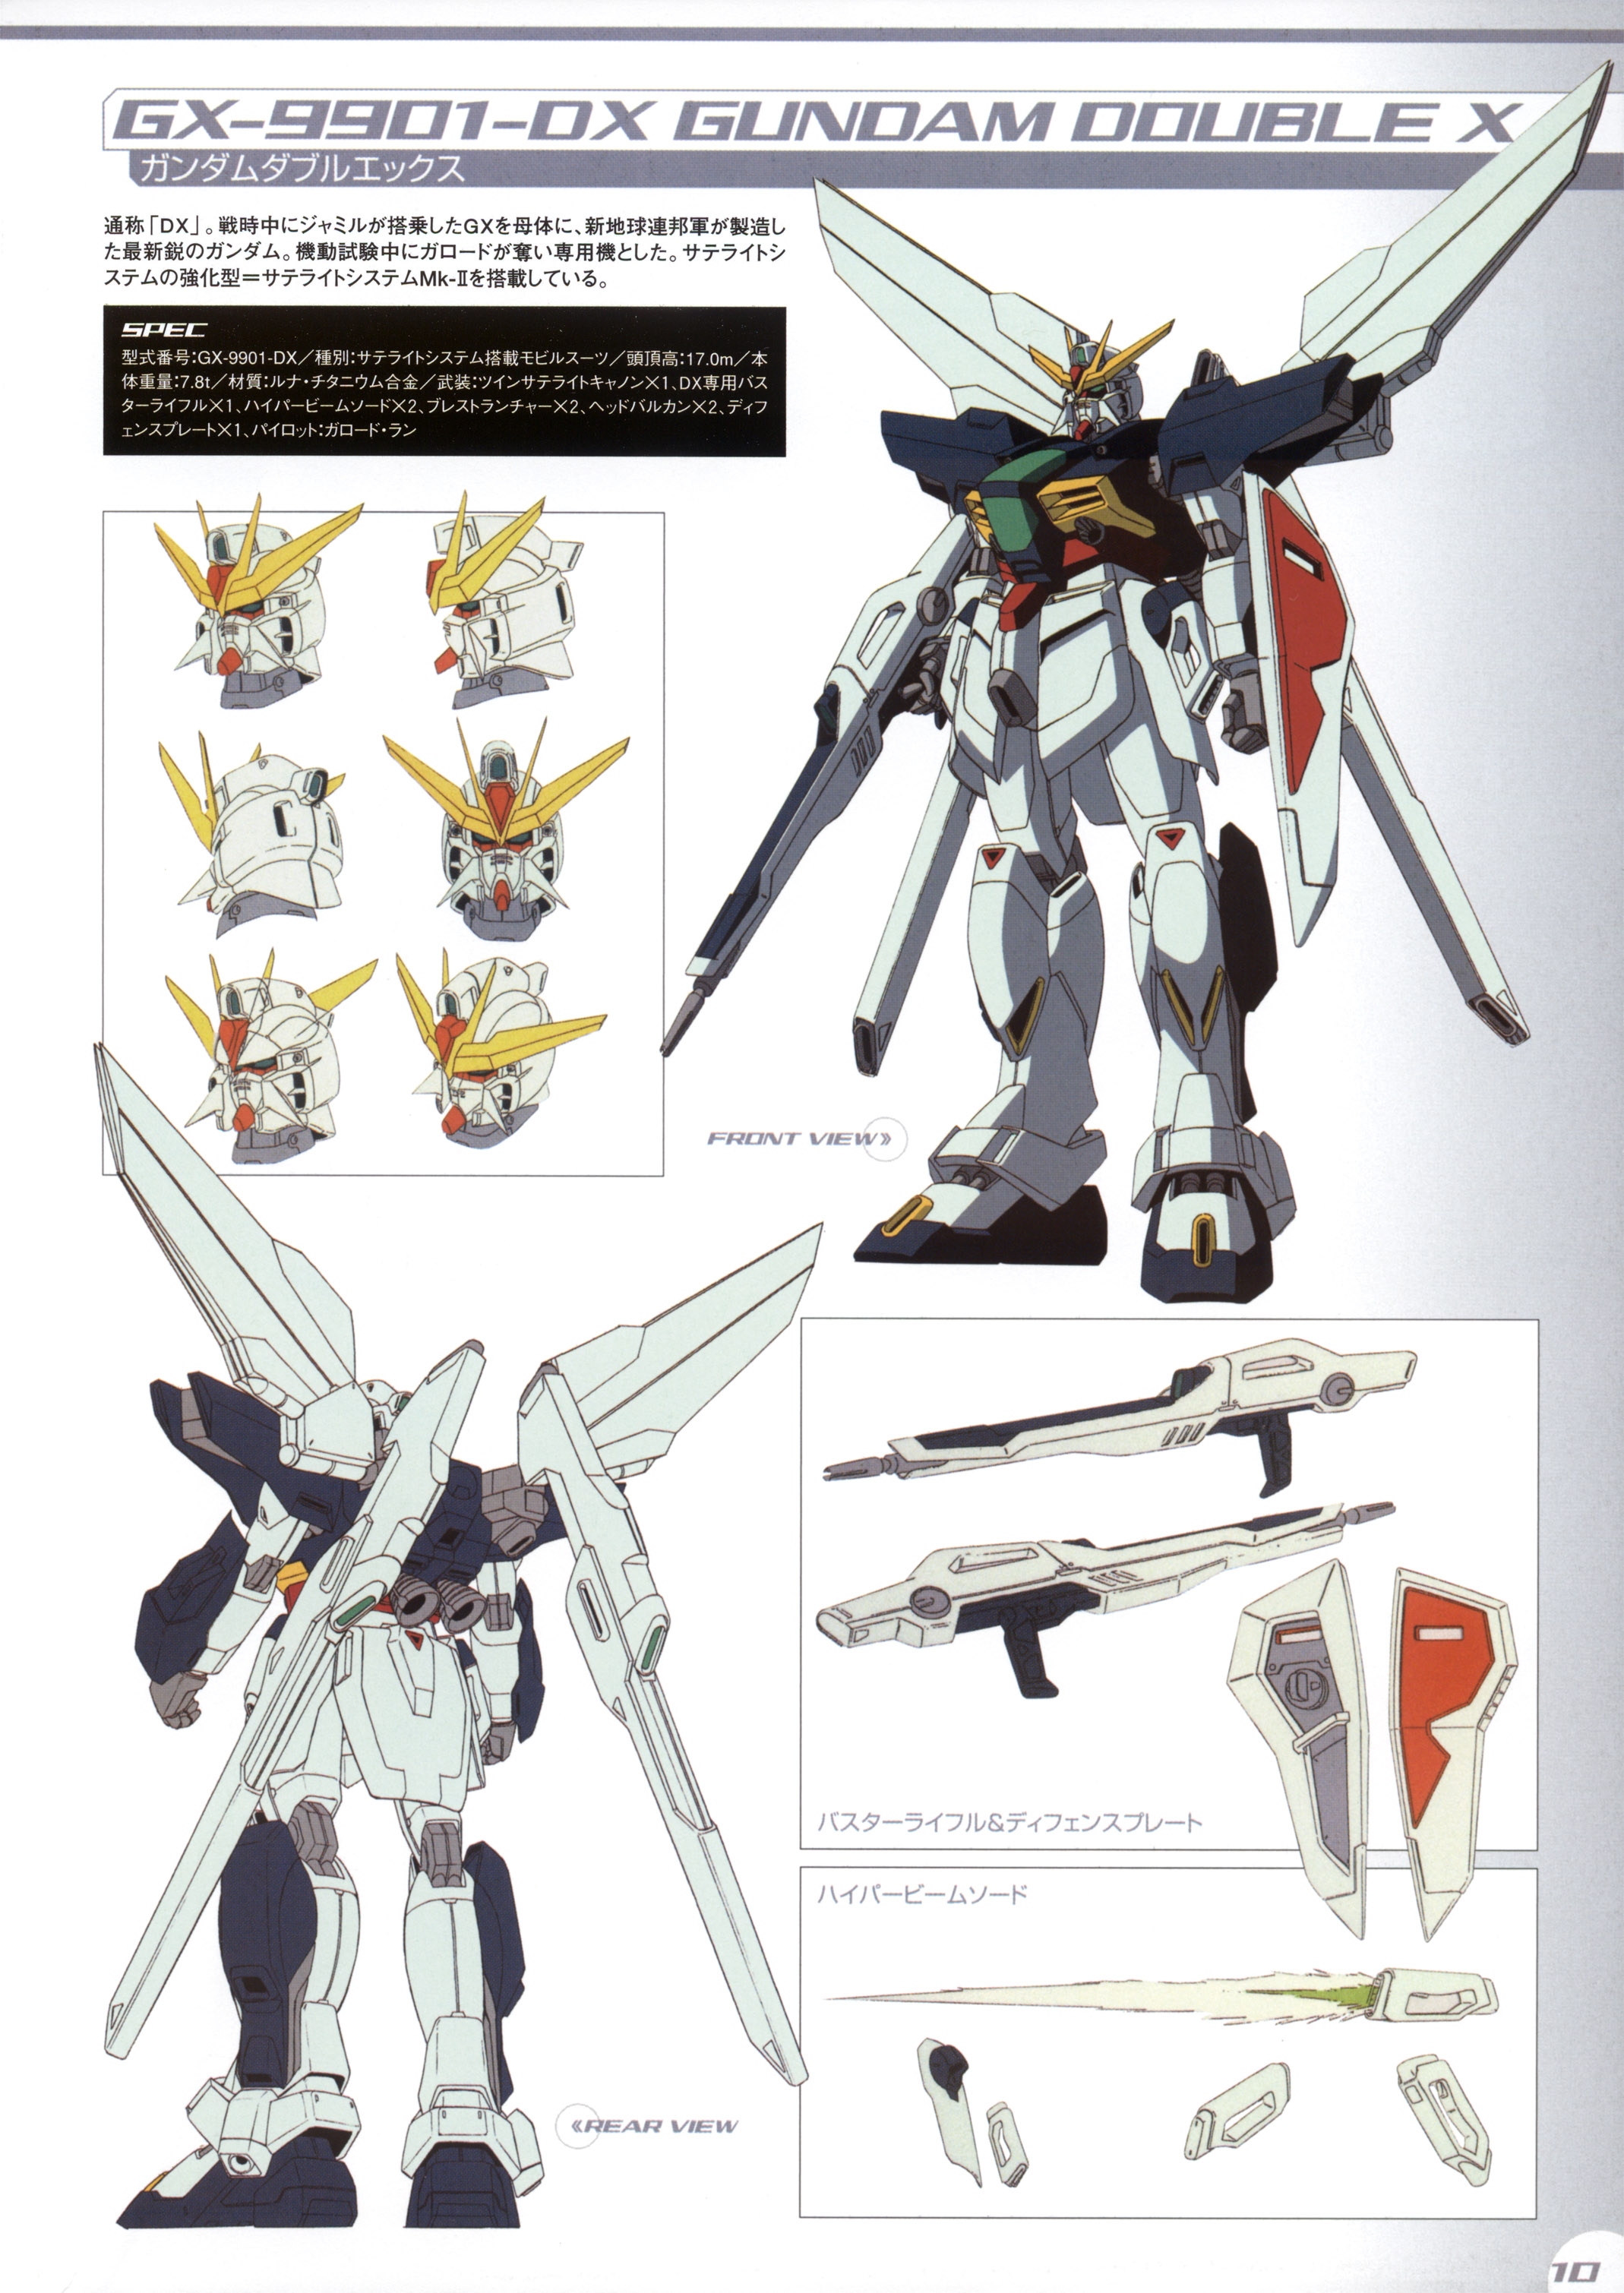 After War Gundam X Wallpapers Anime Hq After War Gundam X Pictures 4k Wallpapers 19